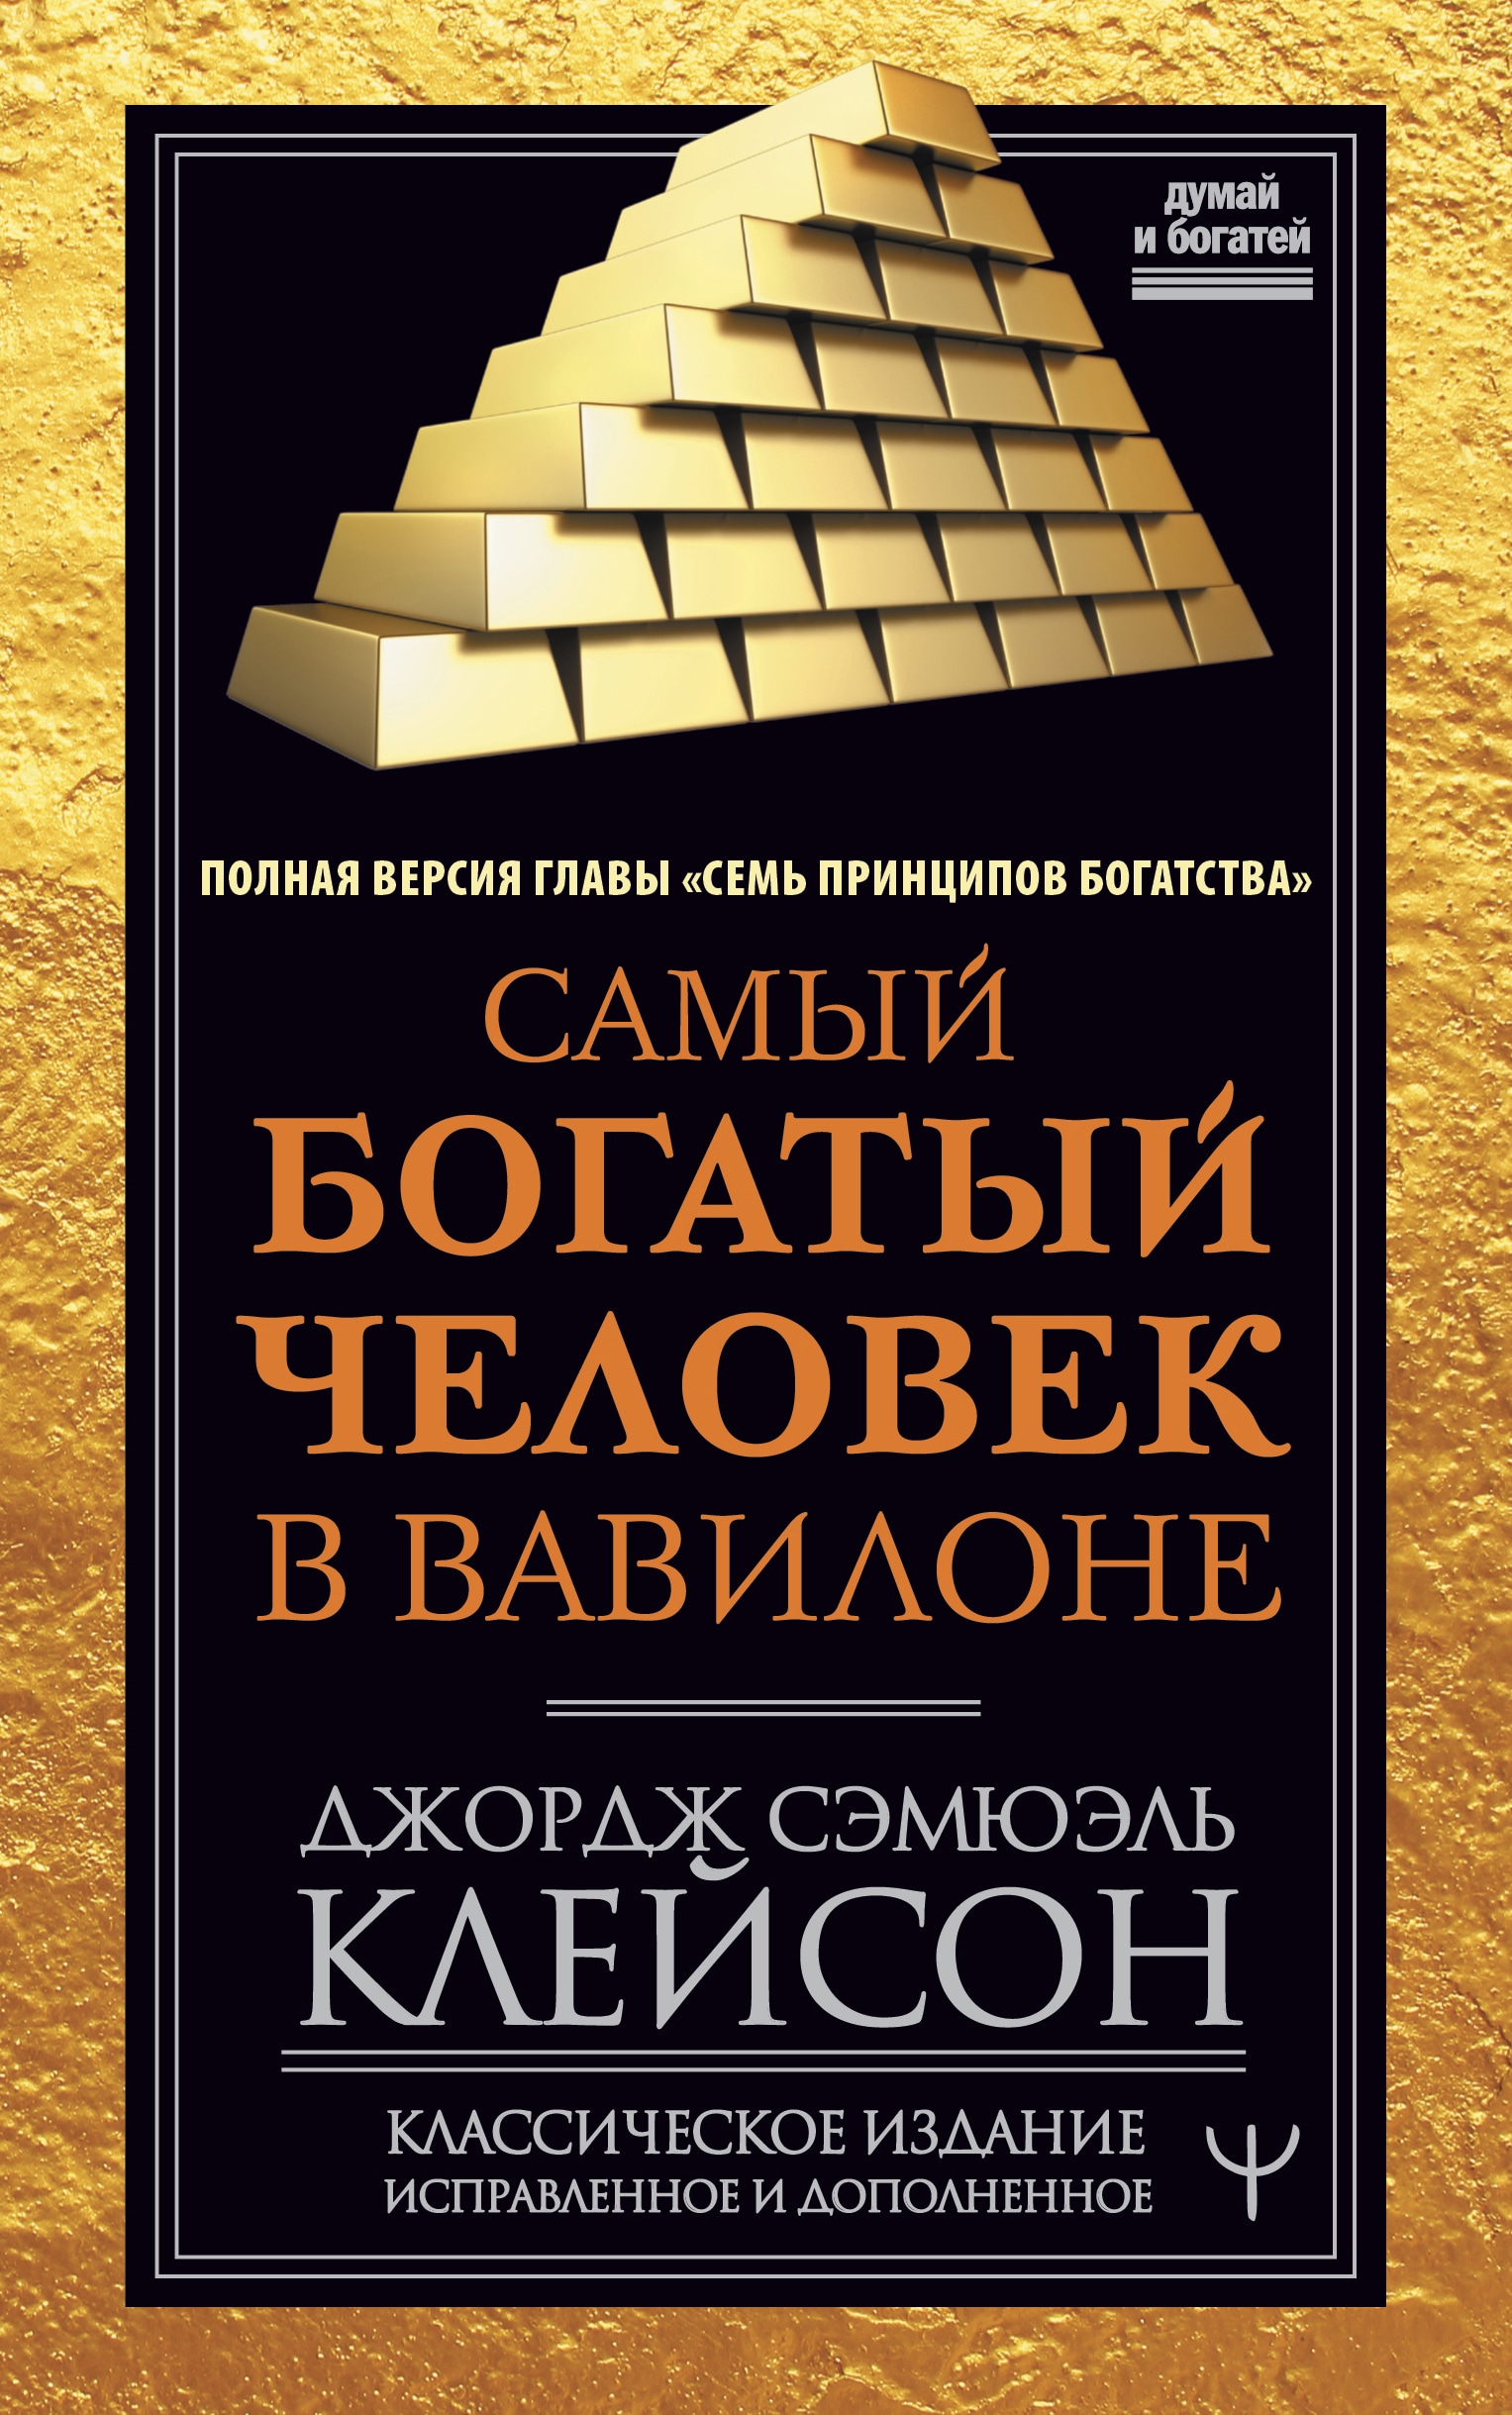 Книга самого богатого человека вавилона